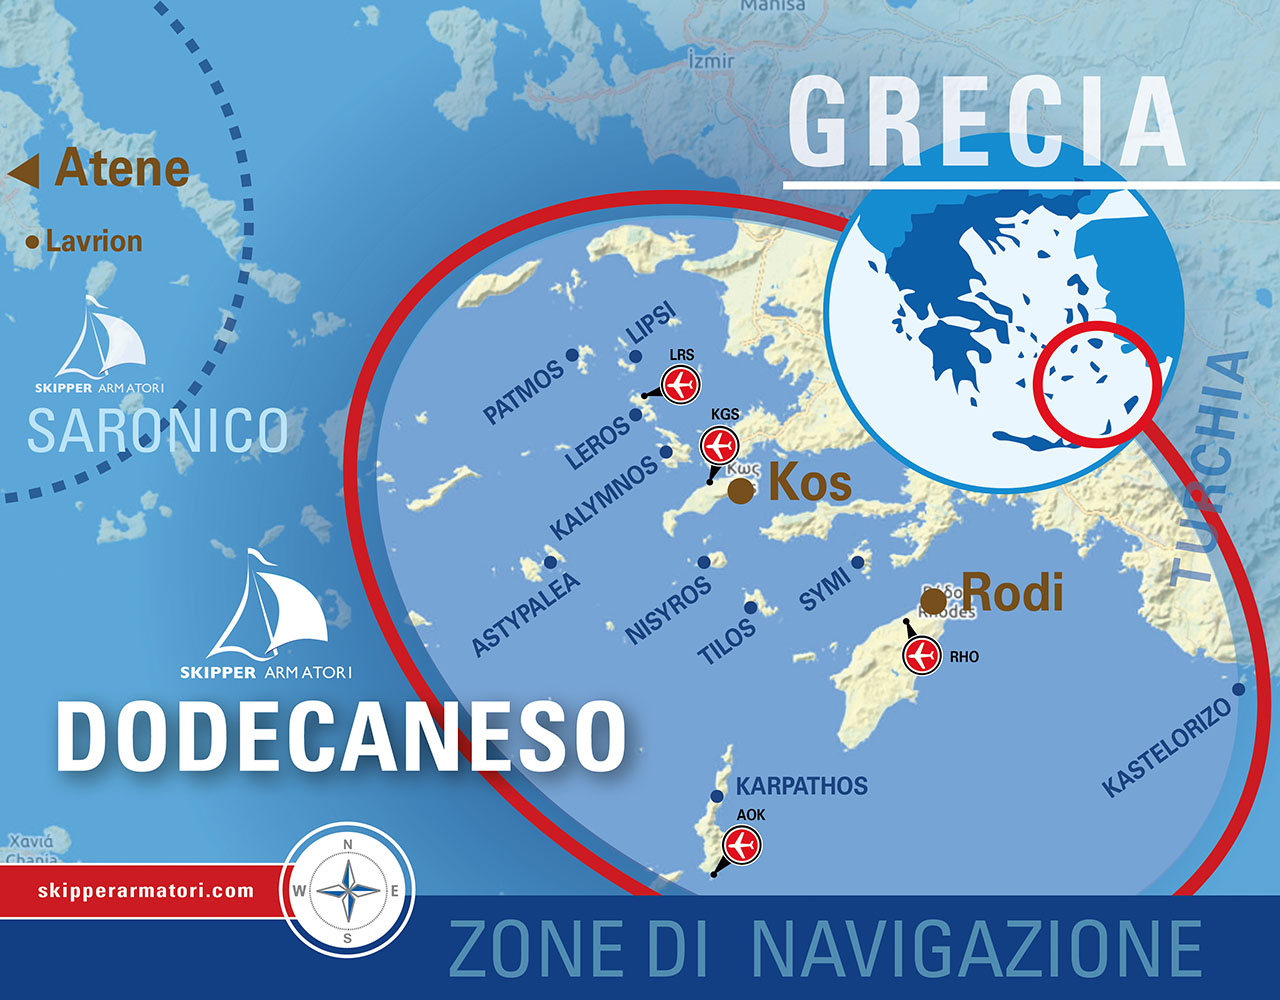 Mappa delle zone di navigazione per le Vacanze in Barca a Vela alle Isole del Dodecaneso di Skipper Armatori, nella grafica sono evidenziate Kos e Rodi come punti di partenza.